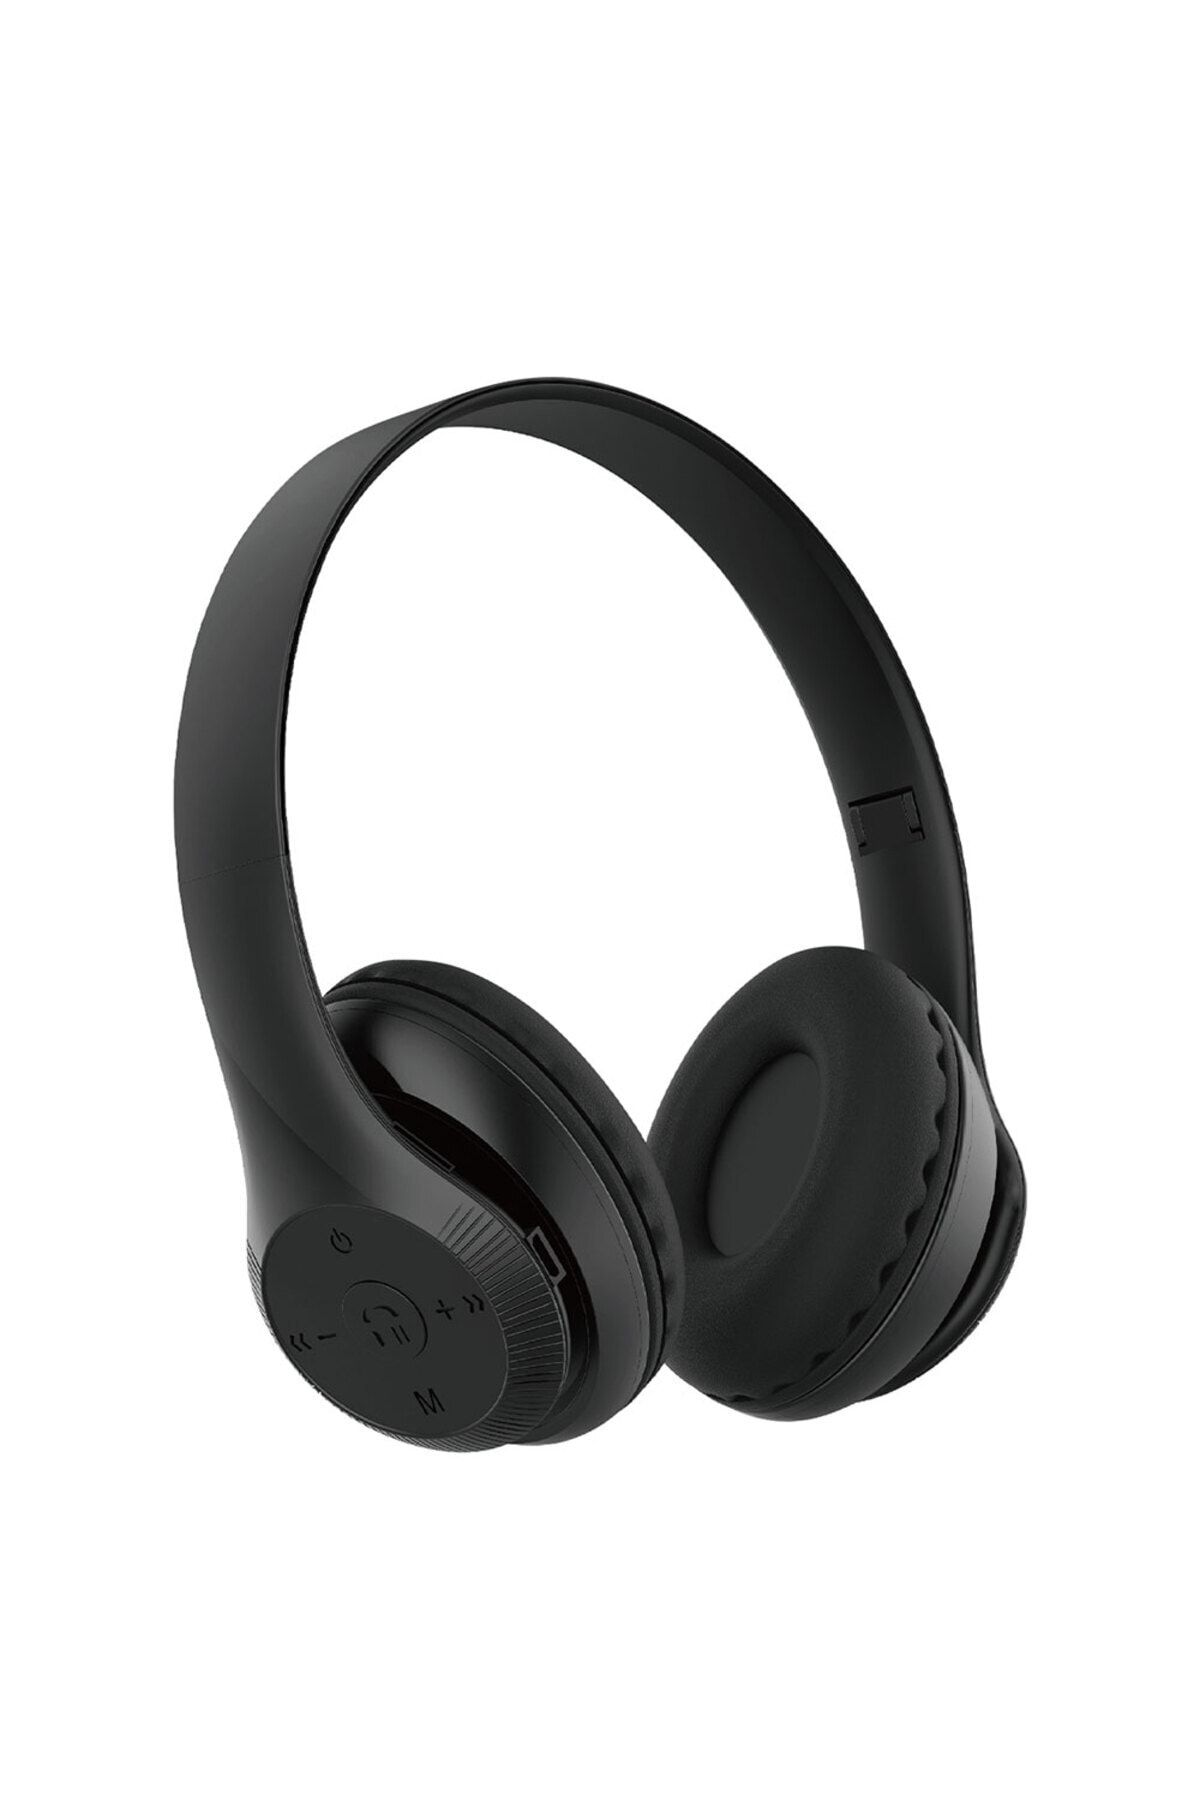 Fibaks For St95 Güçlü Ses Özelliği Ayarlanabilir Ve Katlanabilir Kulak Üstü Bluetooth Kulaklık